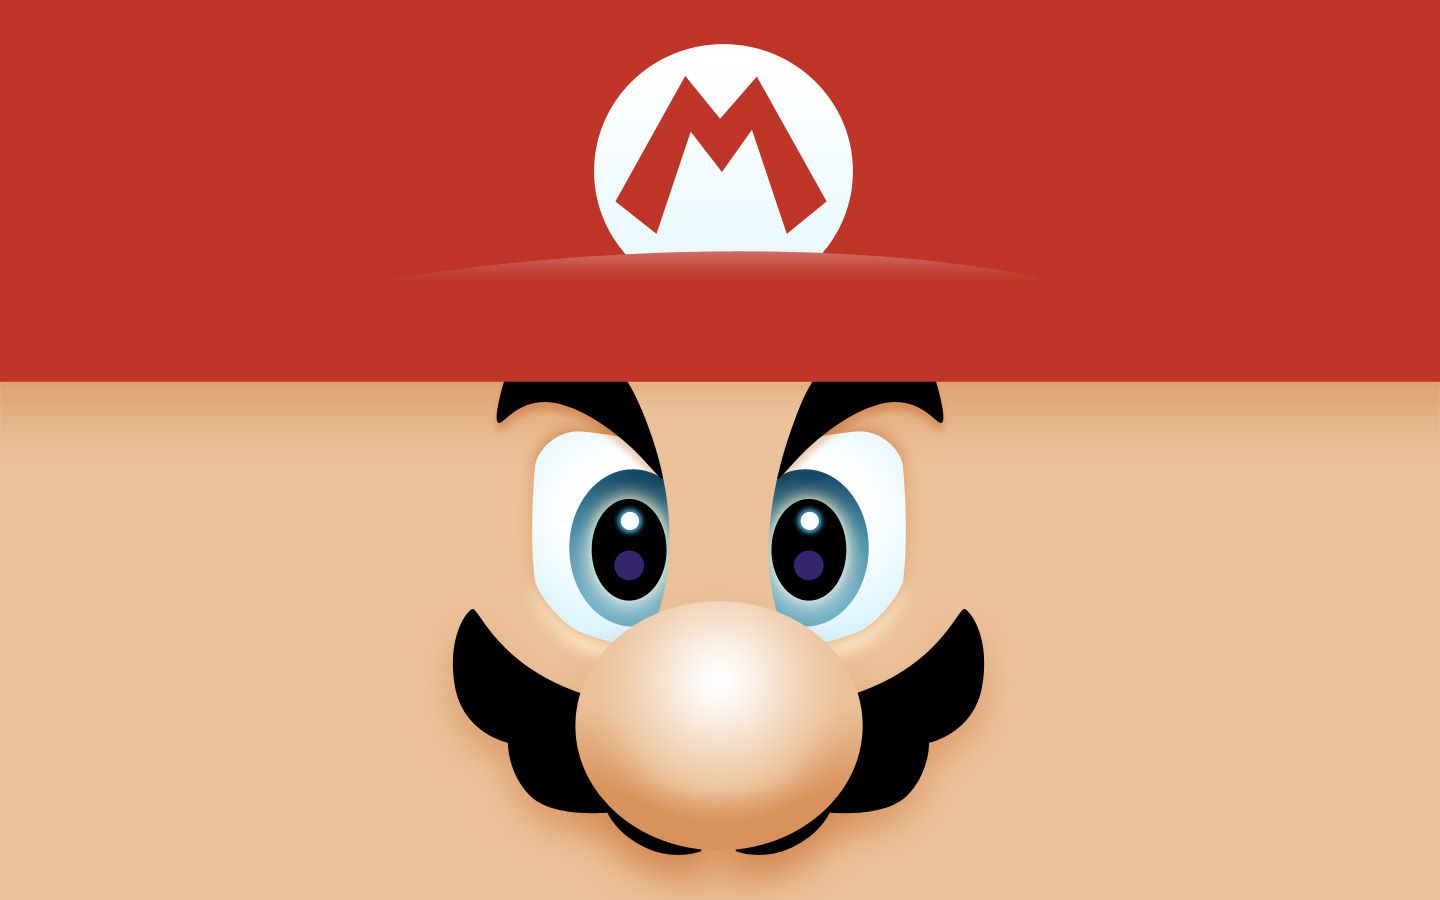 Mario Wallpaper. Mario Wallpaper, Mario iPhone Wallpaper and Funny Mario Wallpaper